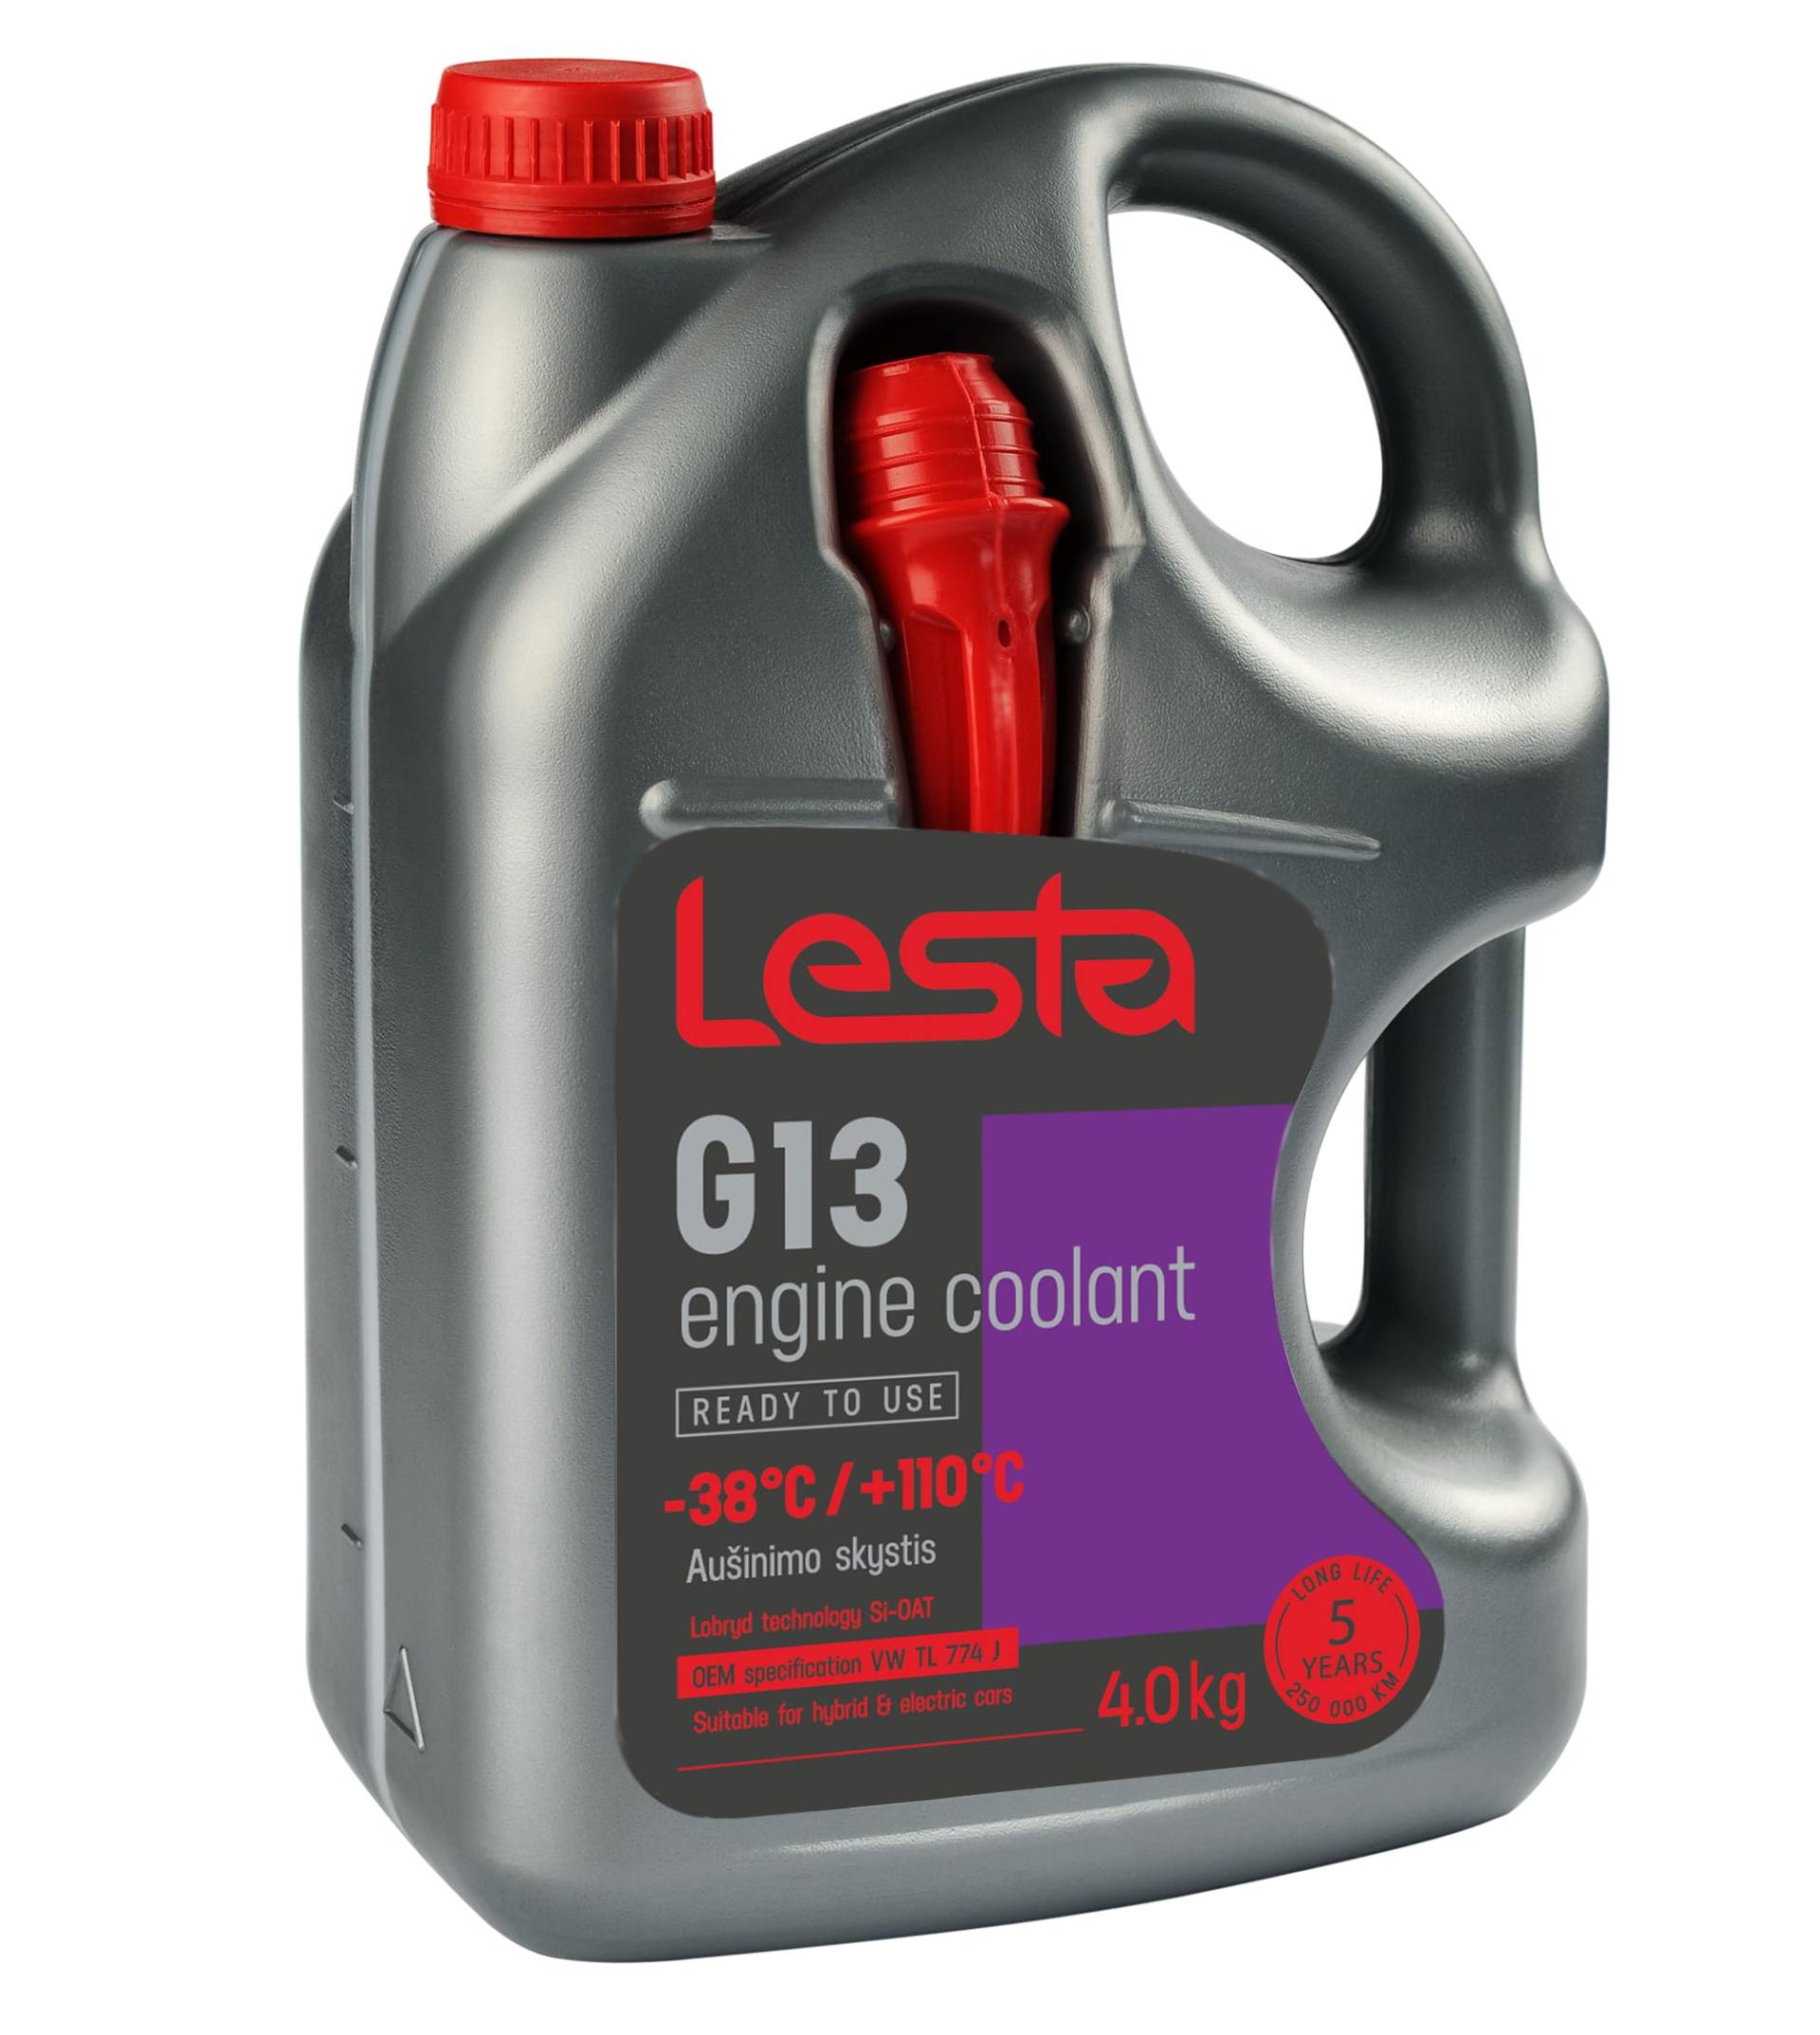 Lesta G13 Motorkühlmittel Geeignet für Hybrid und Elektroautos | Lobrid Technology SI-Oat | Kühlflüssigkeit 5 Jahre bis -38 °C | Schützt den Motor vor Einfrieren, Überhitzung und Korrosion | 4L von Lesta